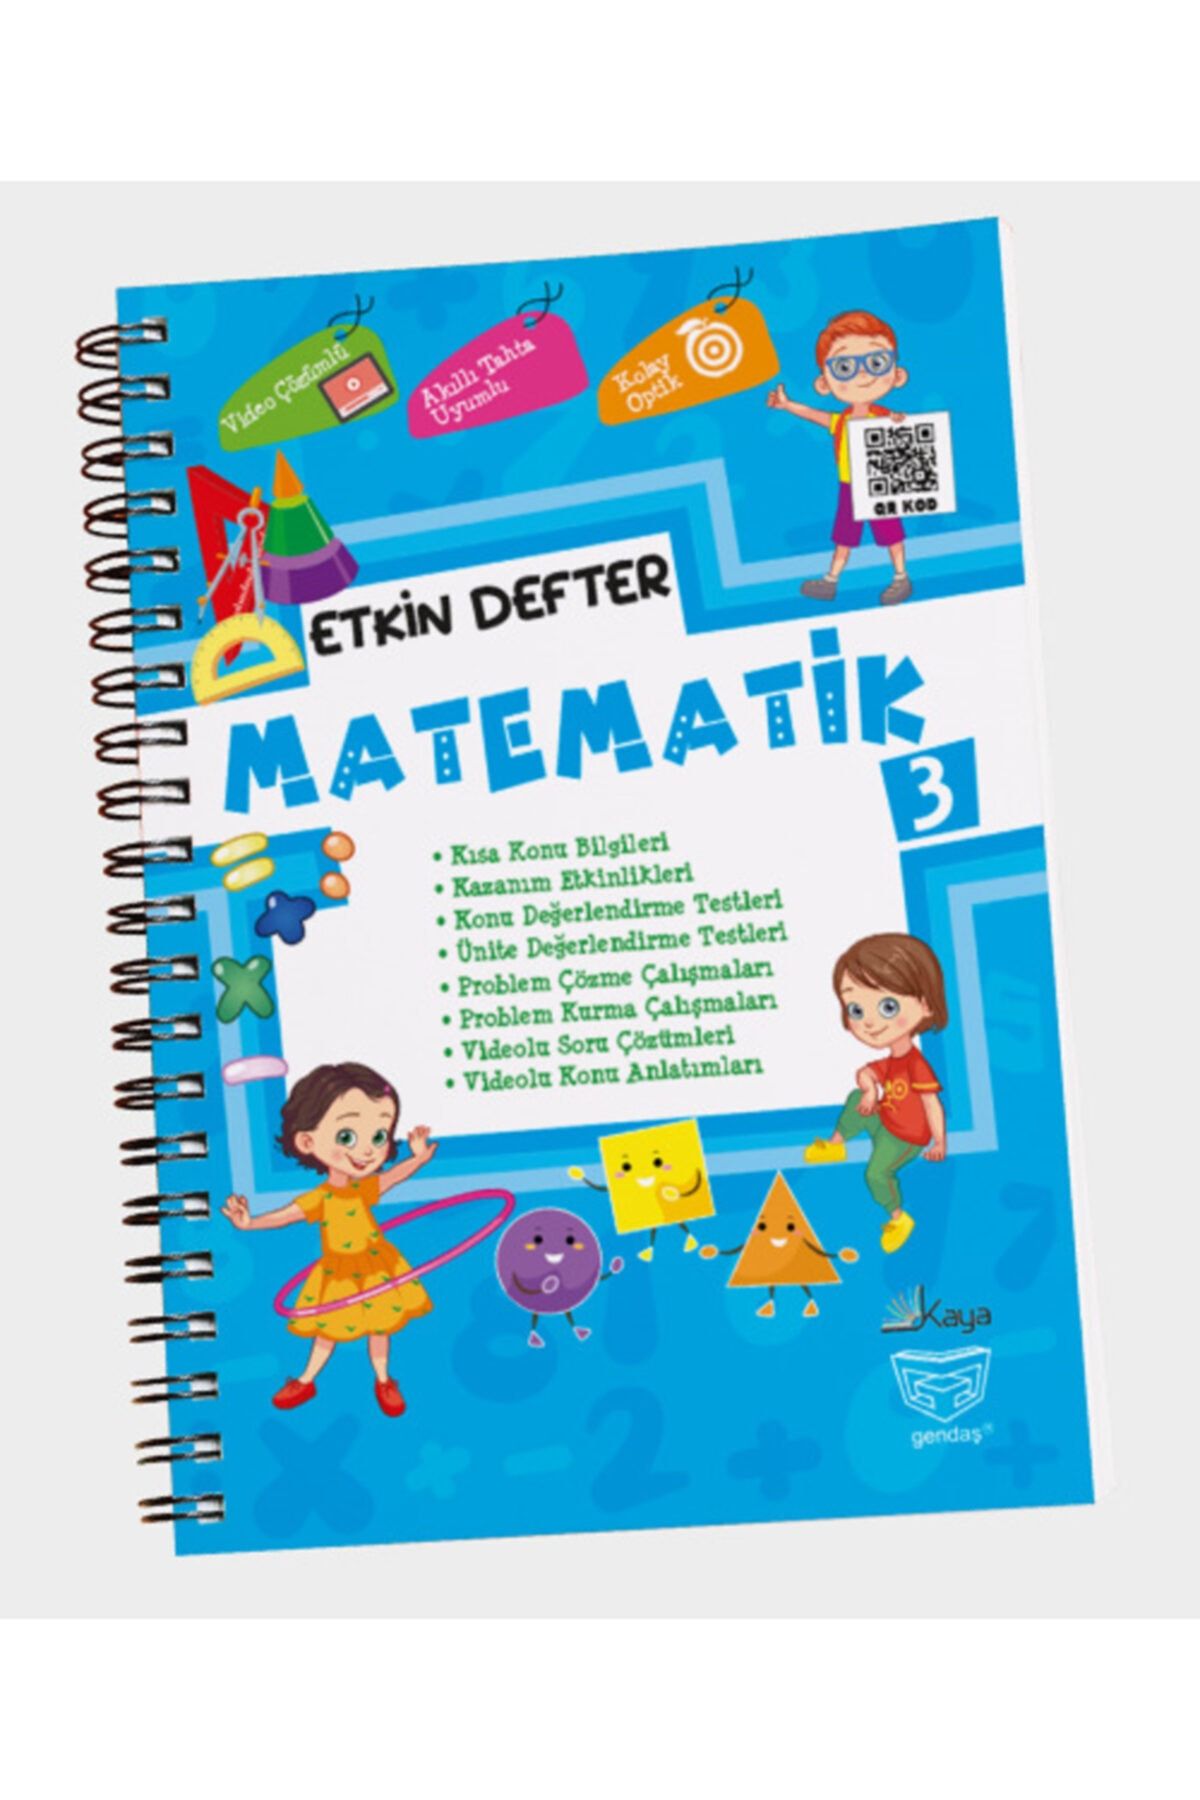 DIGERUI Etkin Defter Matematik 3.sınıf Gendaş Yayınları